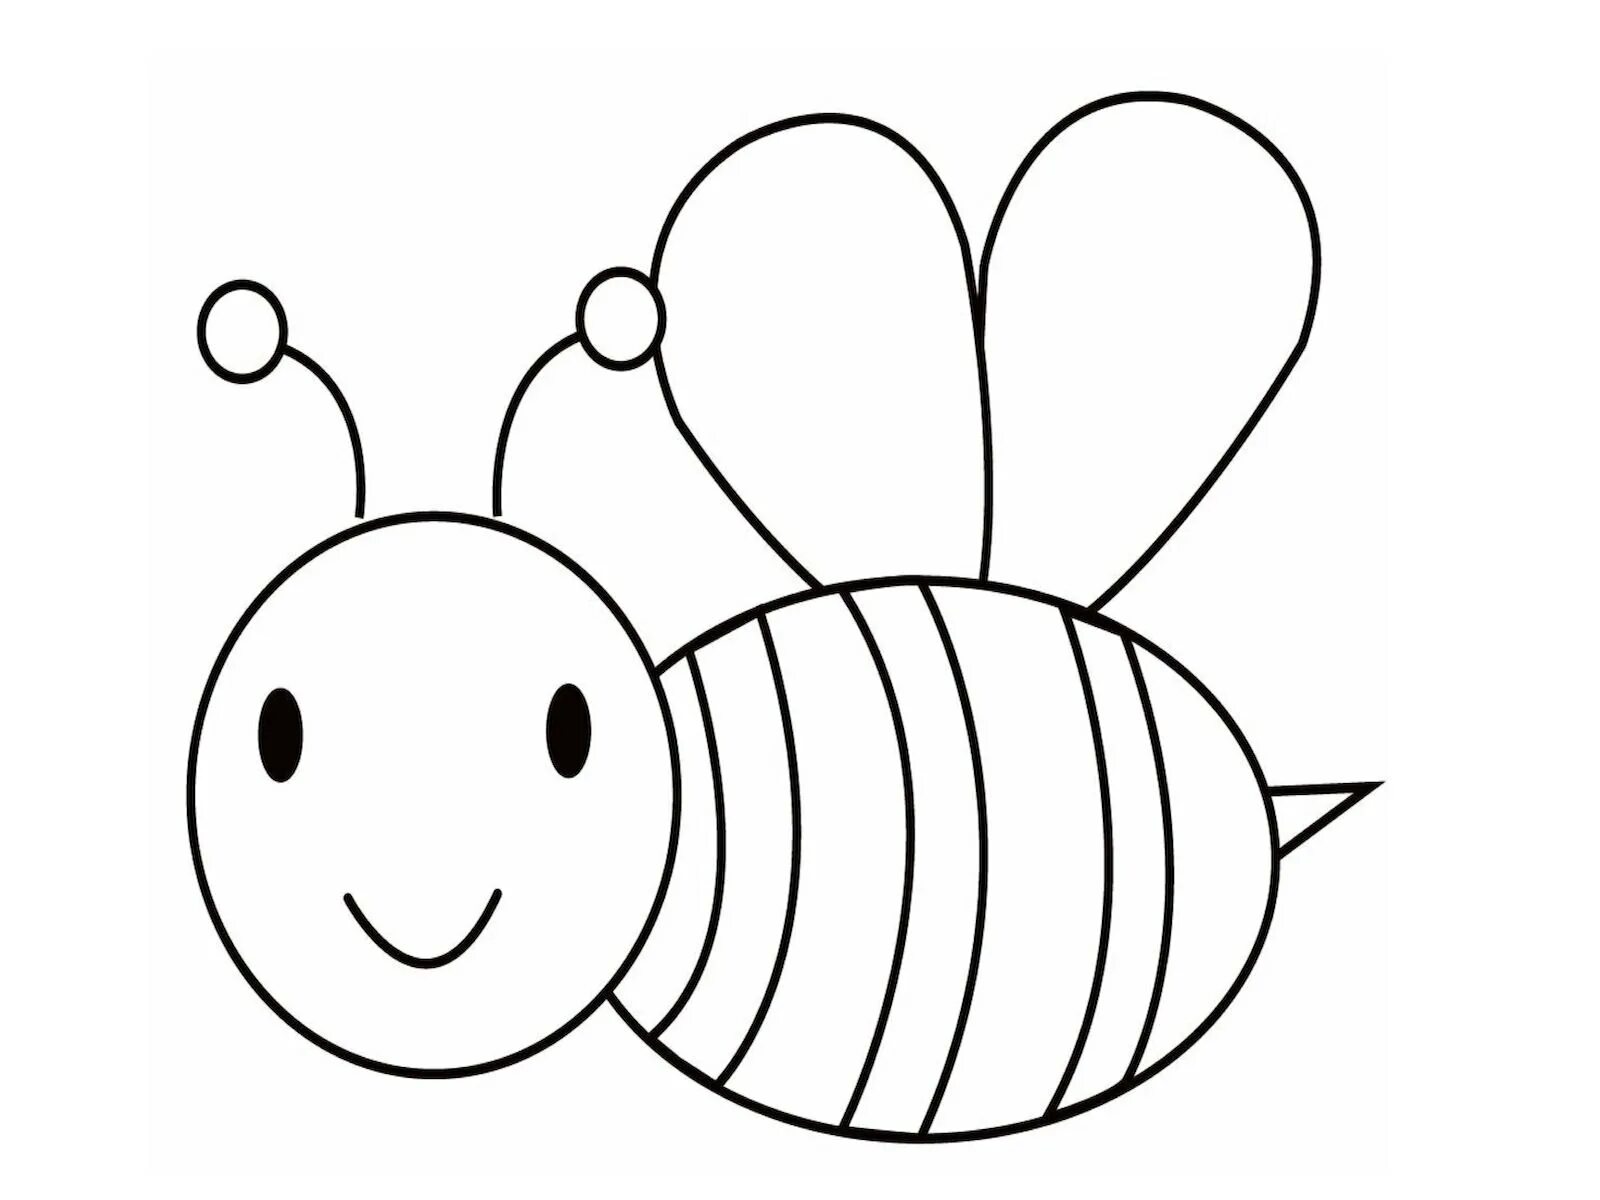 Пчела раскраска для детей. Пчелка раскраска для малышей. Пчелка для раскрашивания детям. Раскраска пчёлка для детей. Раскраска пчела для детей